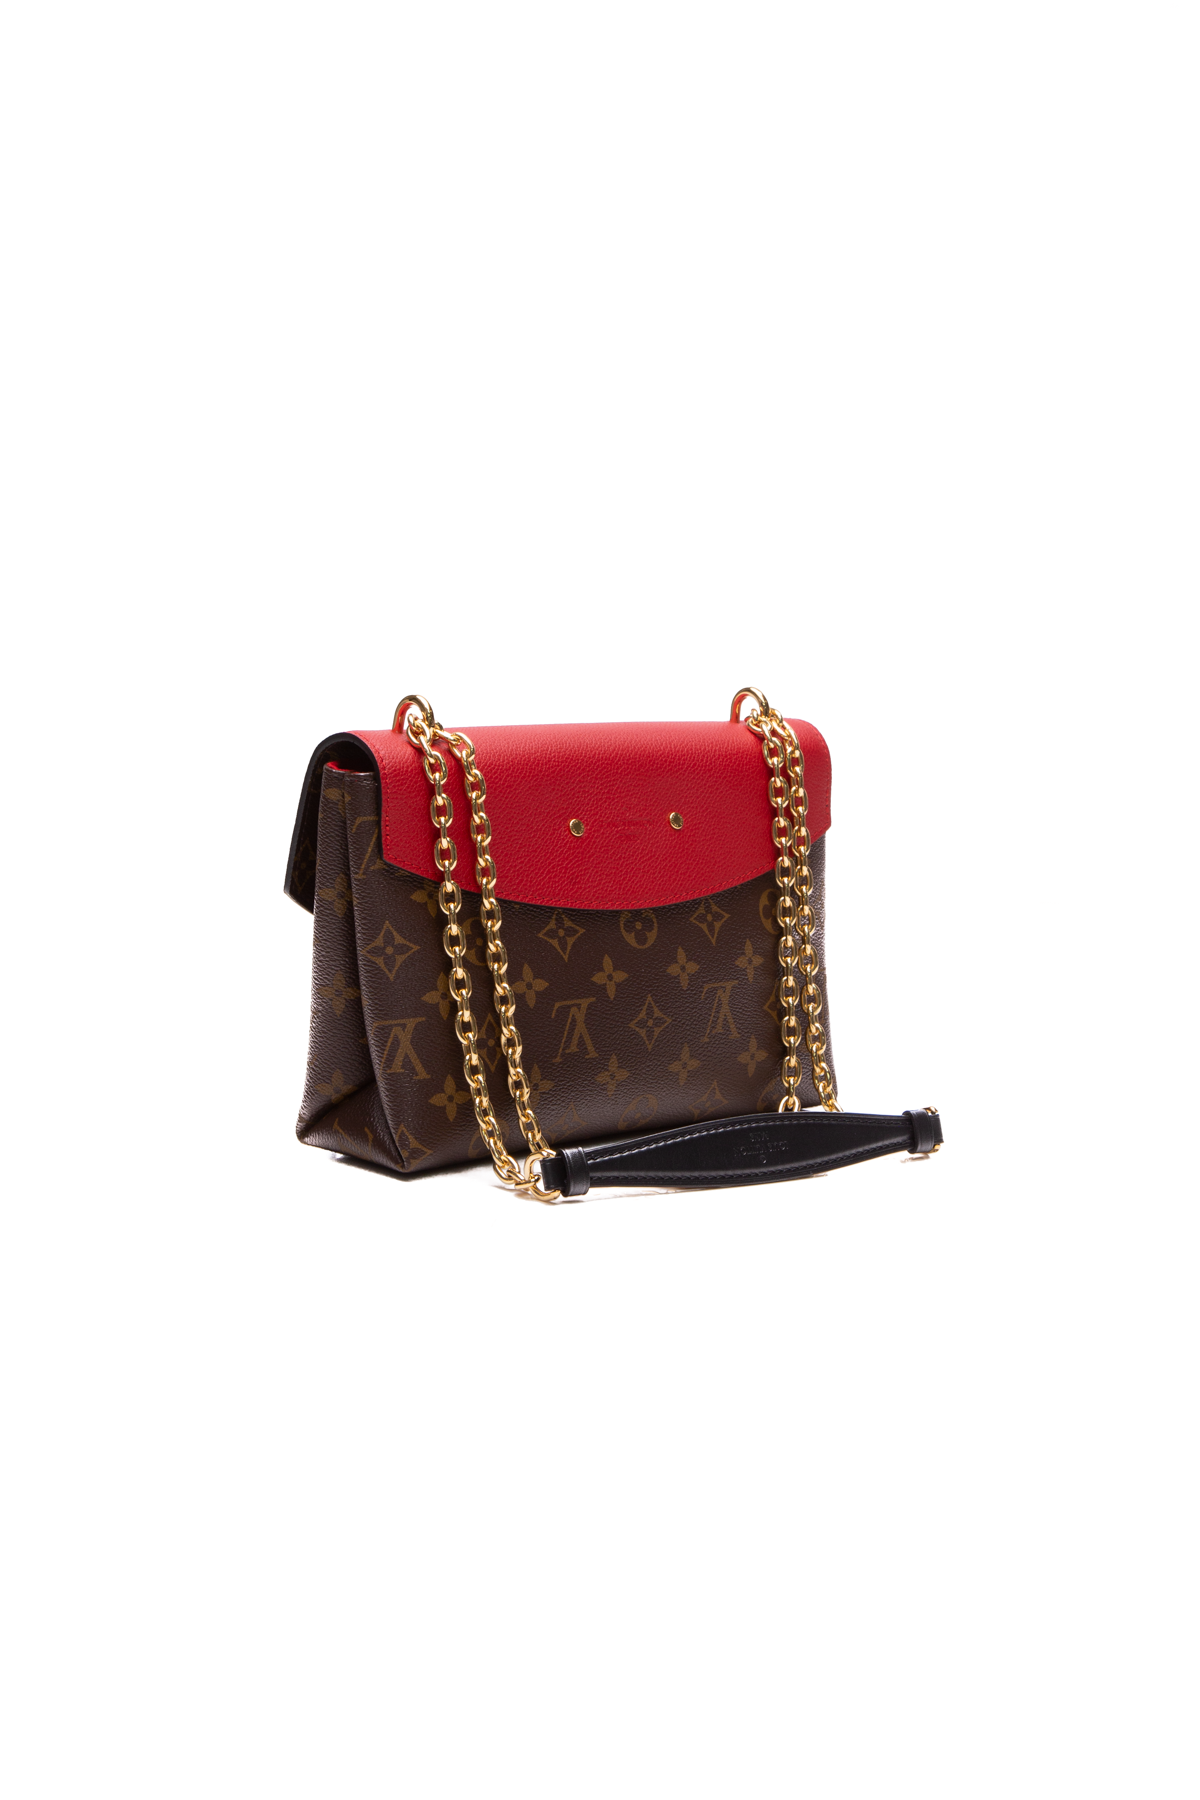 Louis Vuitton Pallas Chain Bag - Couture USA